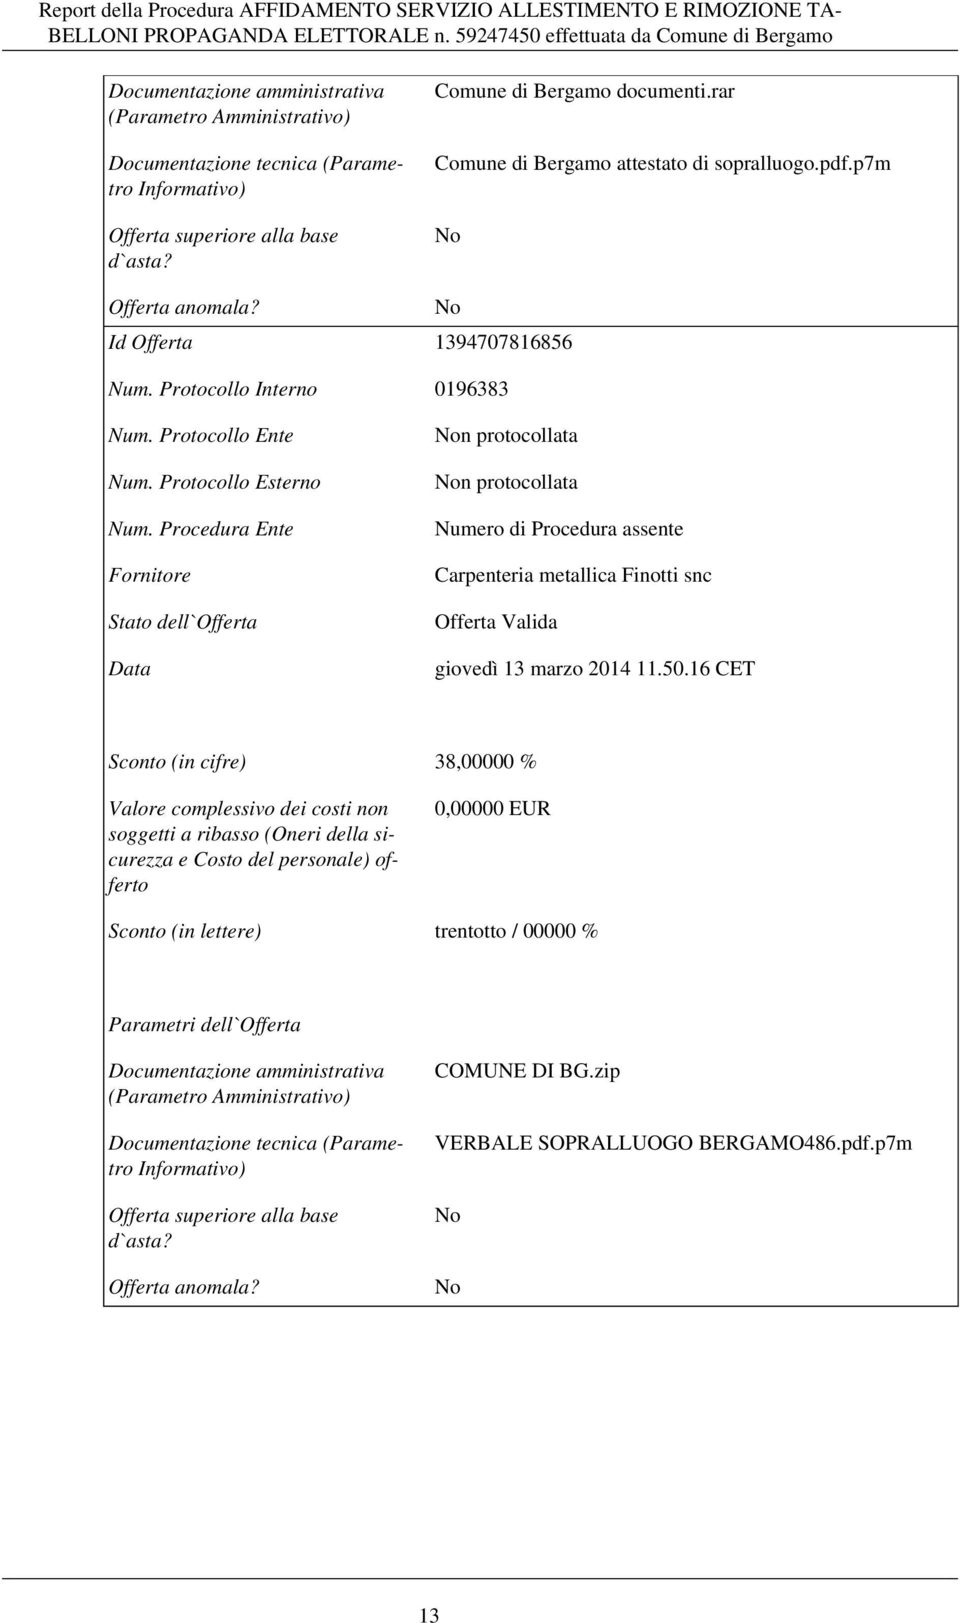 Procedura Ente Fornitore Stato dell`offerta Data n protocollata n protocollata Numero di Procedura assente Carpenteria metallica Finotti snc Offerta Valida giovedì 13 marzo 2014 11.50.